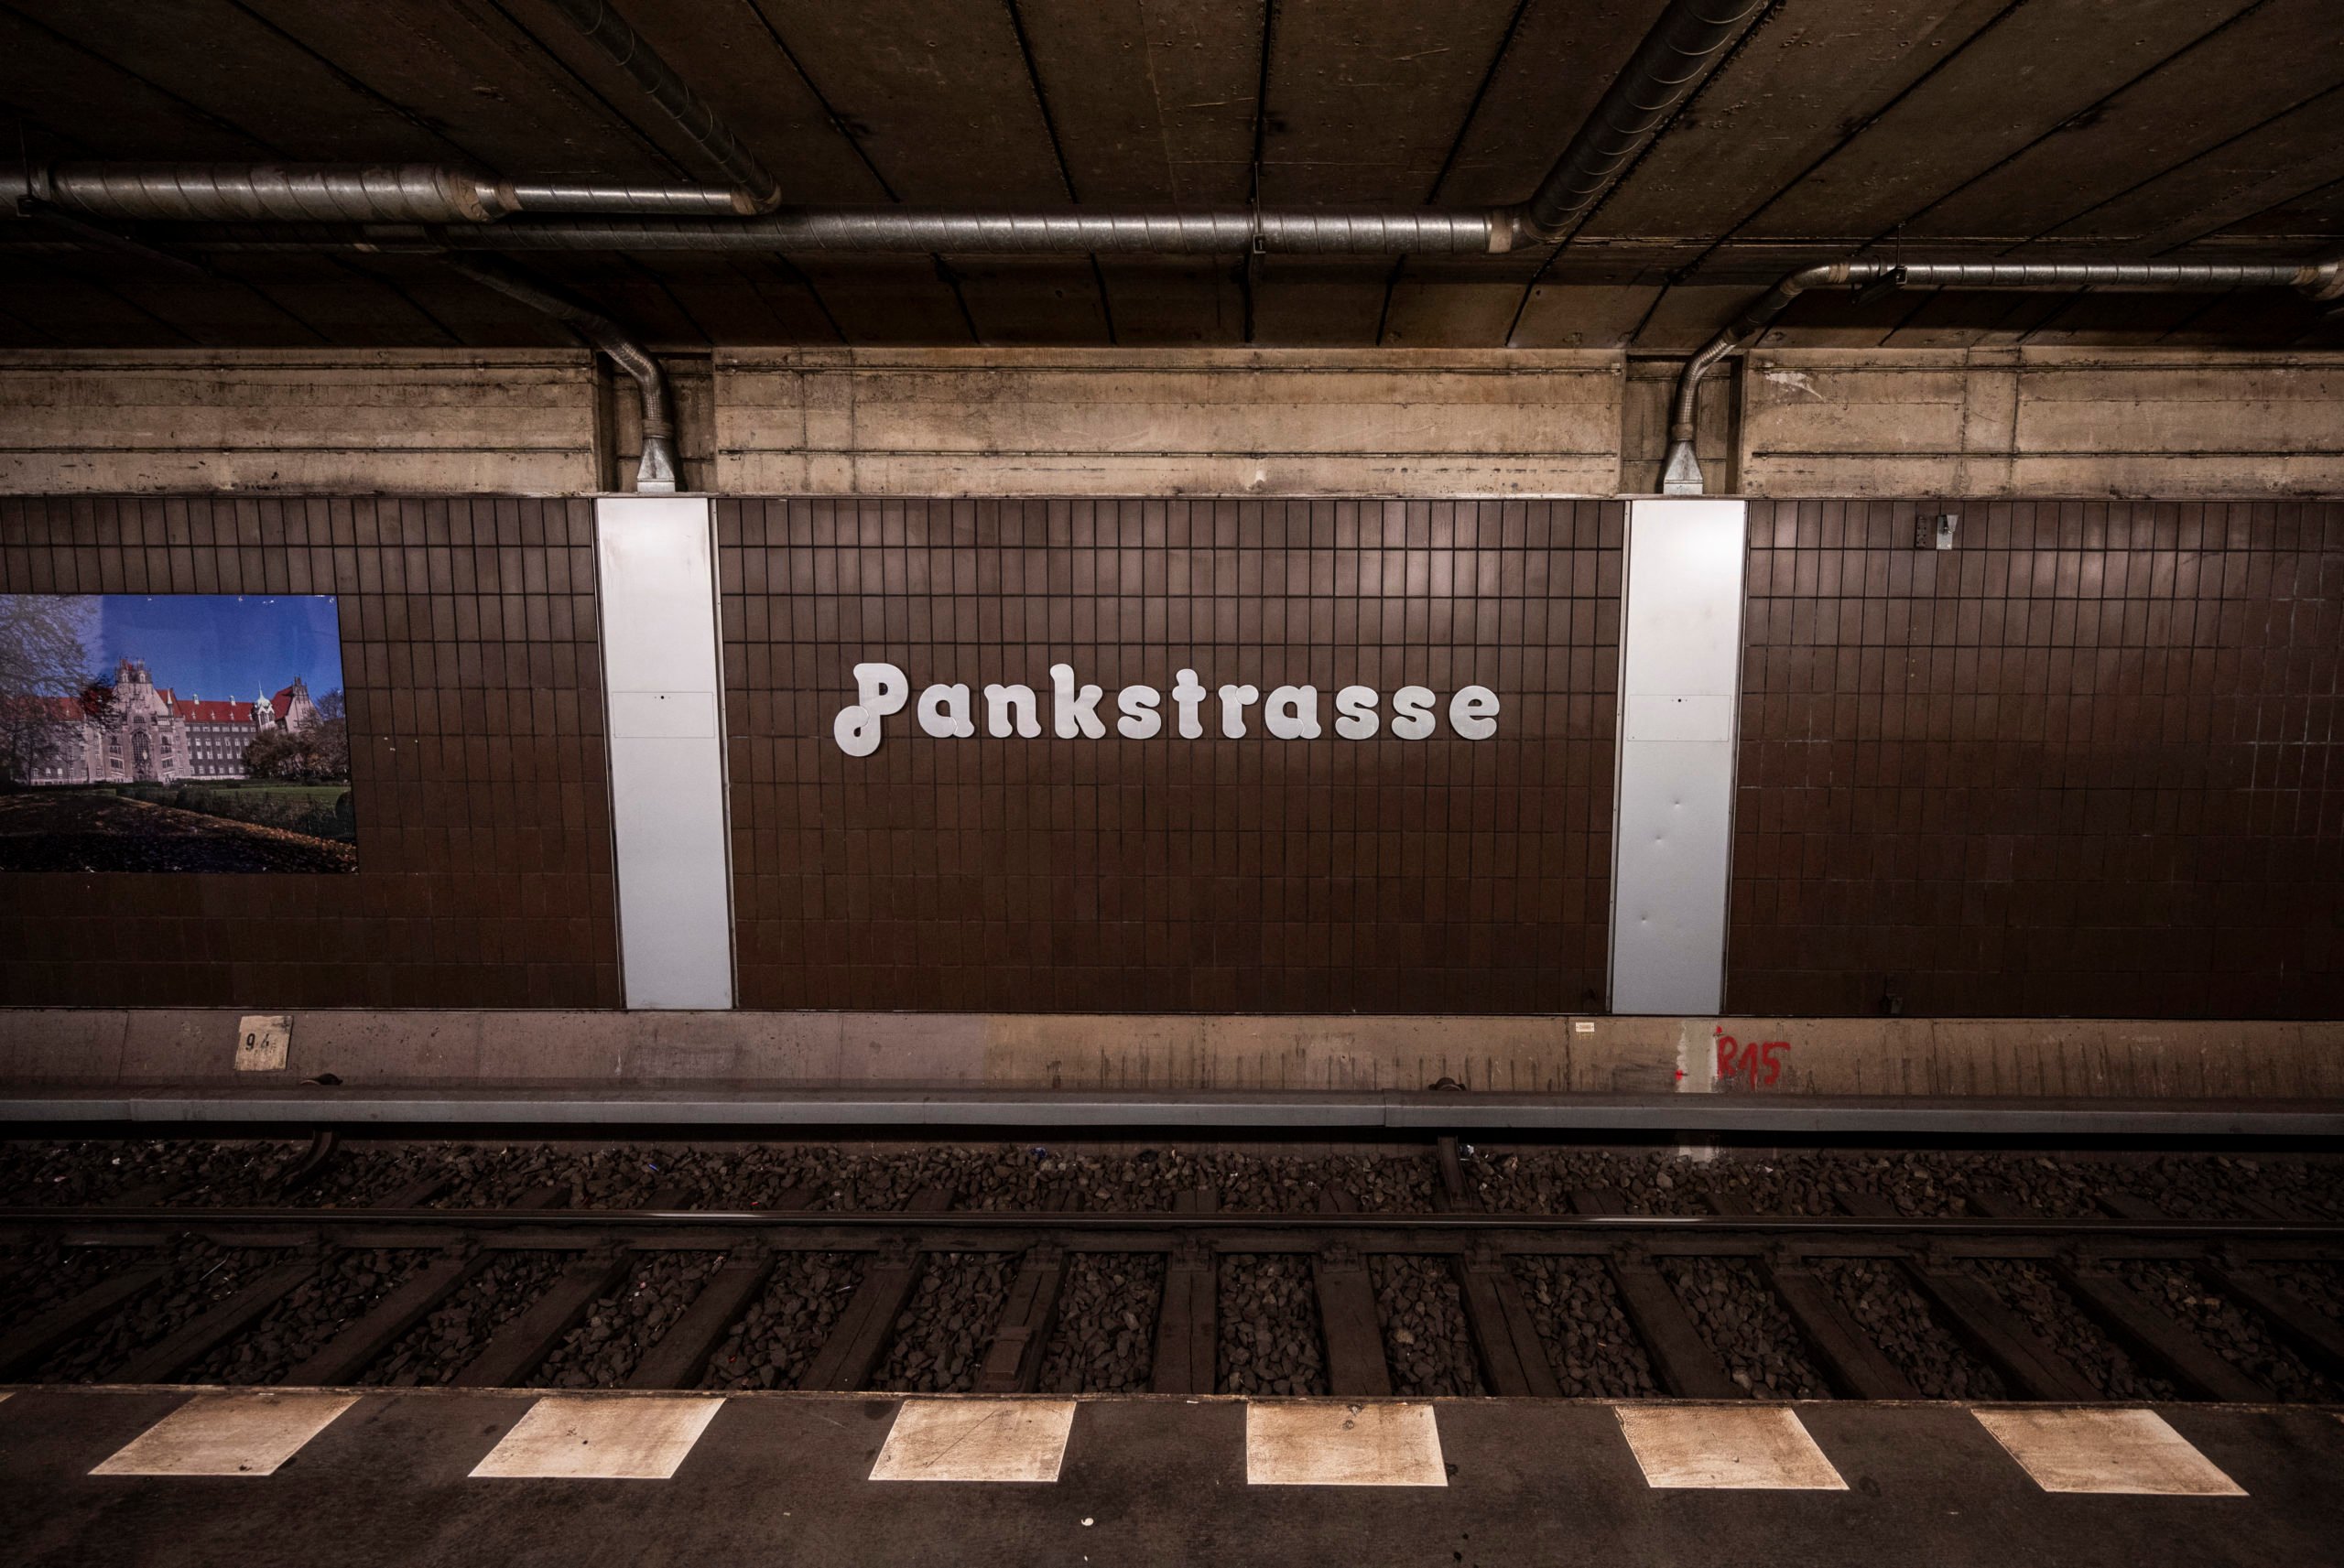 Pankstrasse U-Bahn